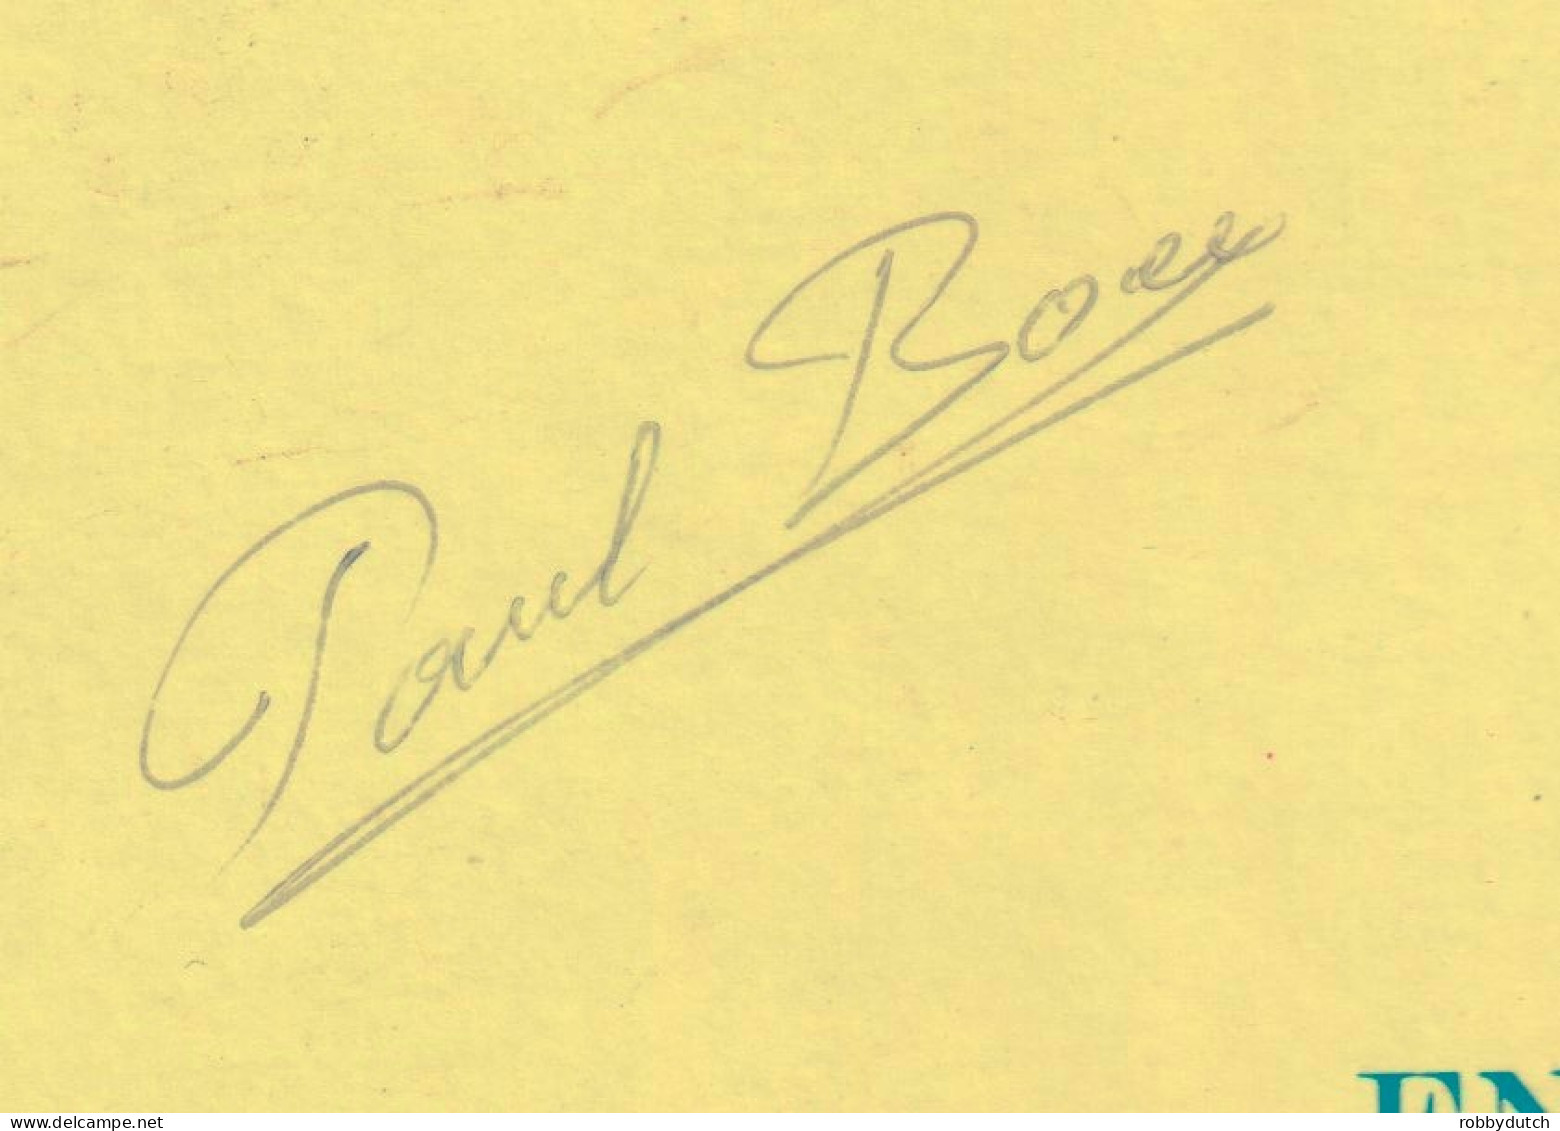 * LP *  PAUL BOEY - ' K HEB DE MOT IN ME LIJF (Belgie 1979 Hand-signed) - Other - Dutch Music